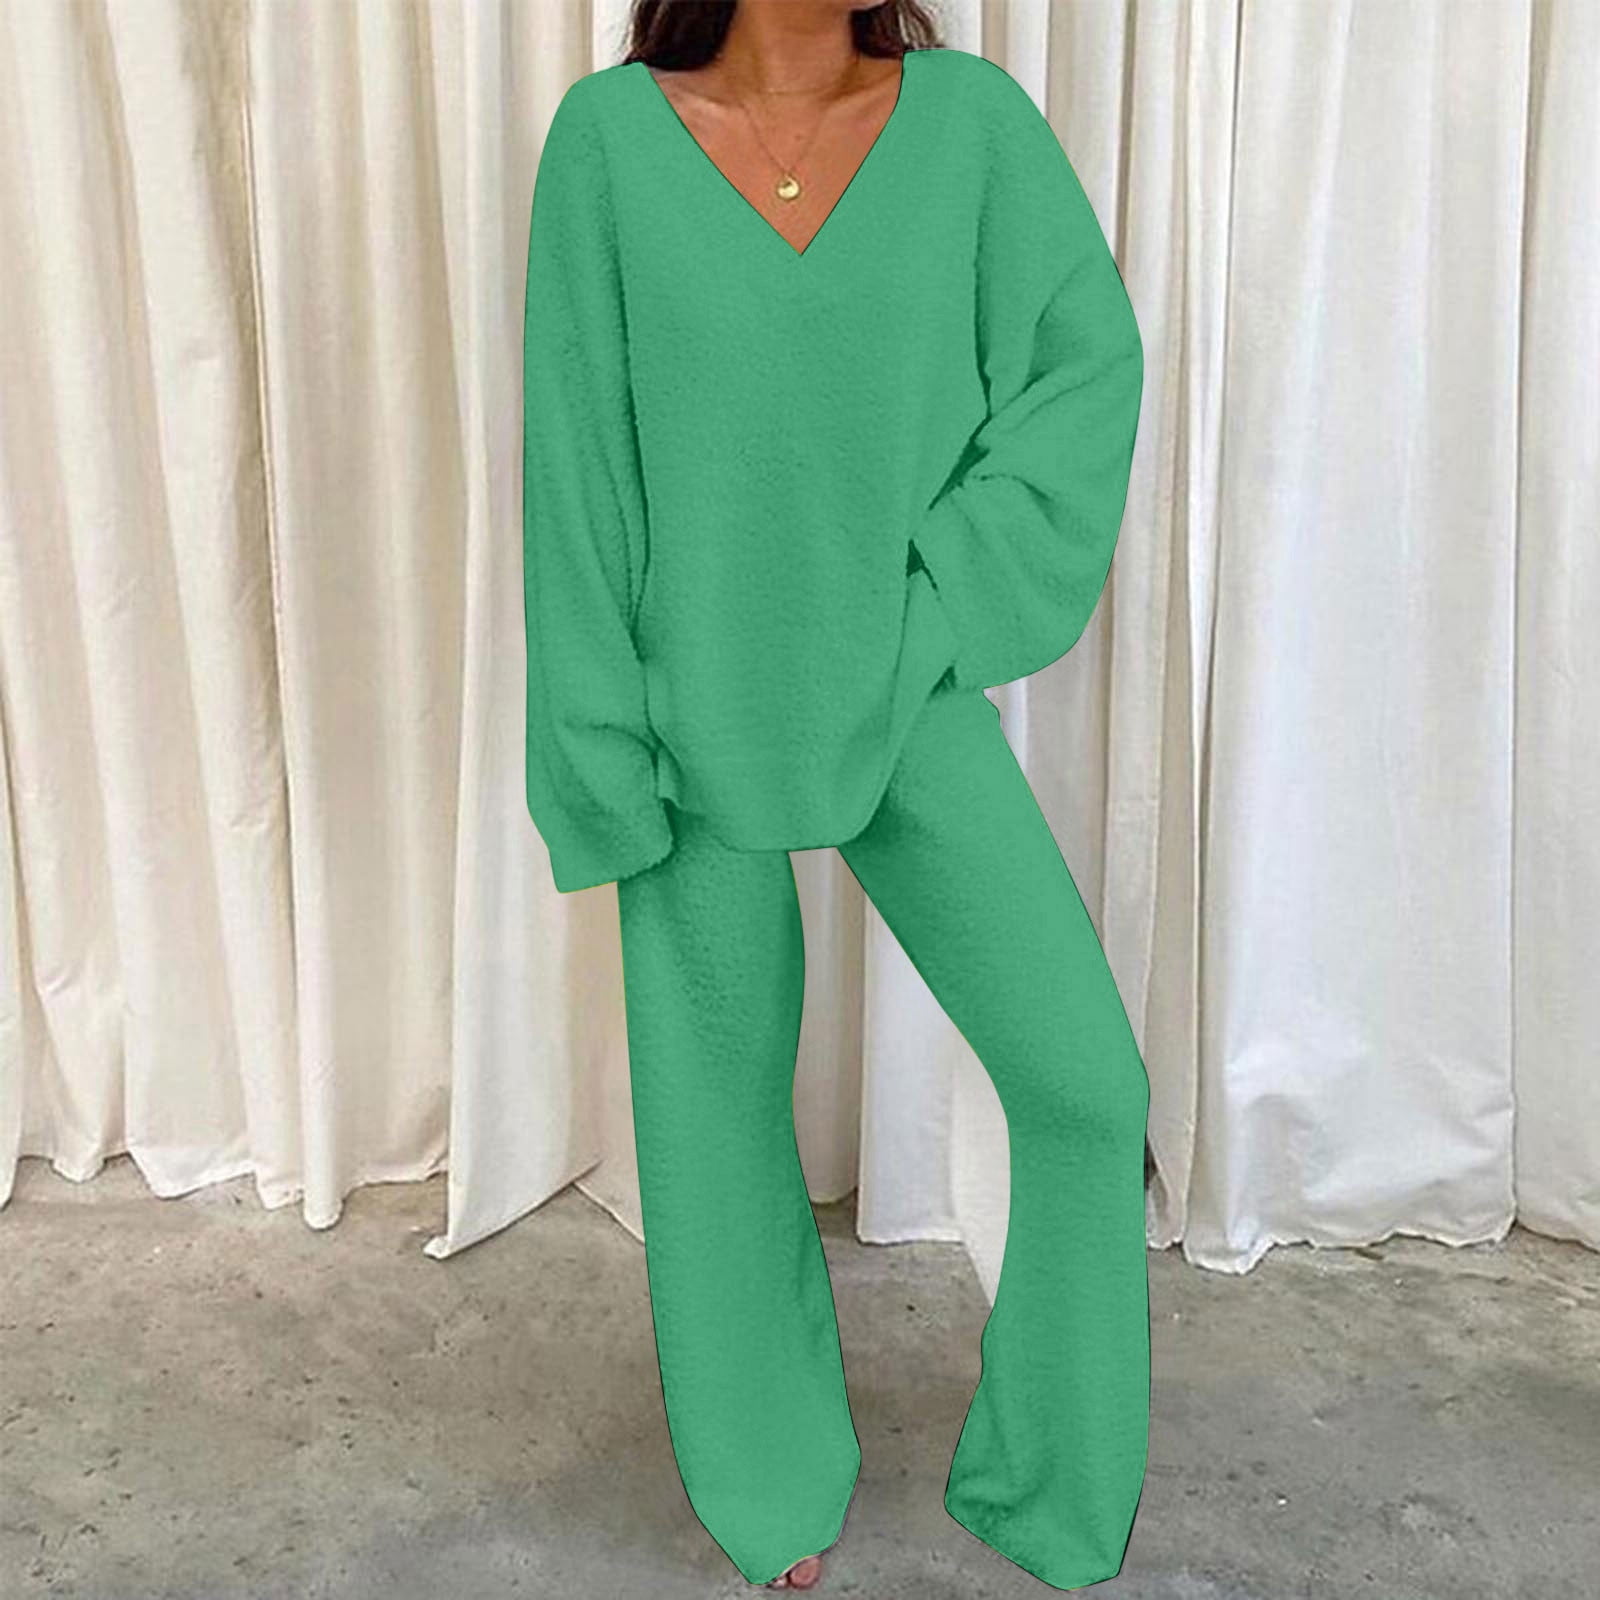 YYNS Fleece Pajama Set for Women, Winter Warm 2-Piece Sleepwear Long Sleeve  Loungewear Nightwear Soft Pj Lounge Sets